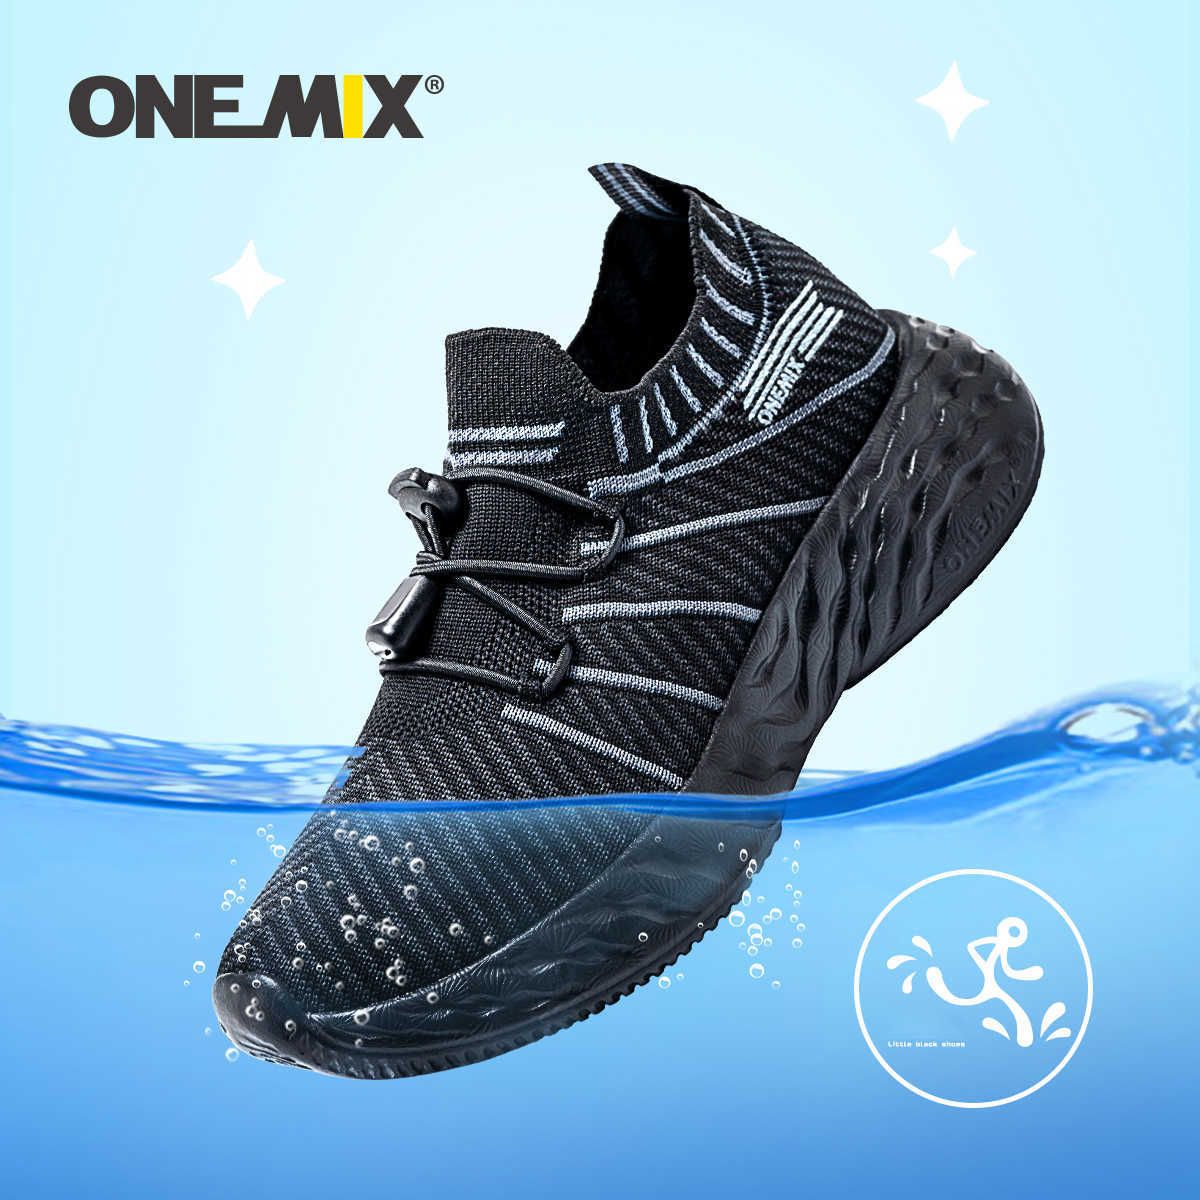 ONEMIX IMPLESIBLE KID Sneakers De Zapatillas De Alta Calidad Para Niños Zapatillas Niños Malla Transpirable Suave Anti Sucio Zapatos Deportivos De 49,87 € | DHgate